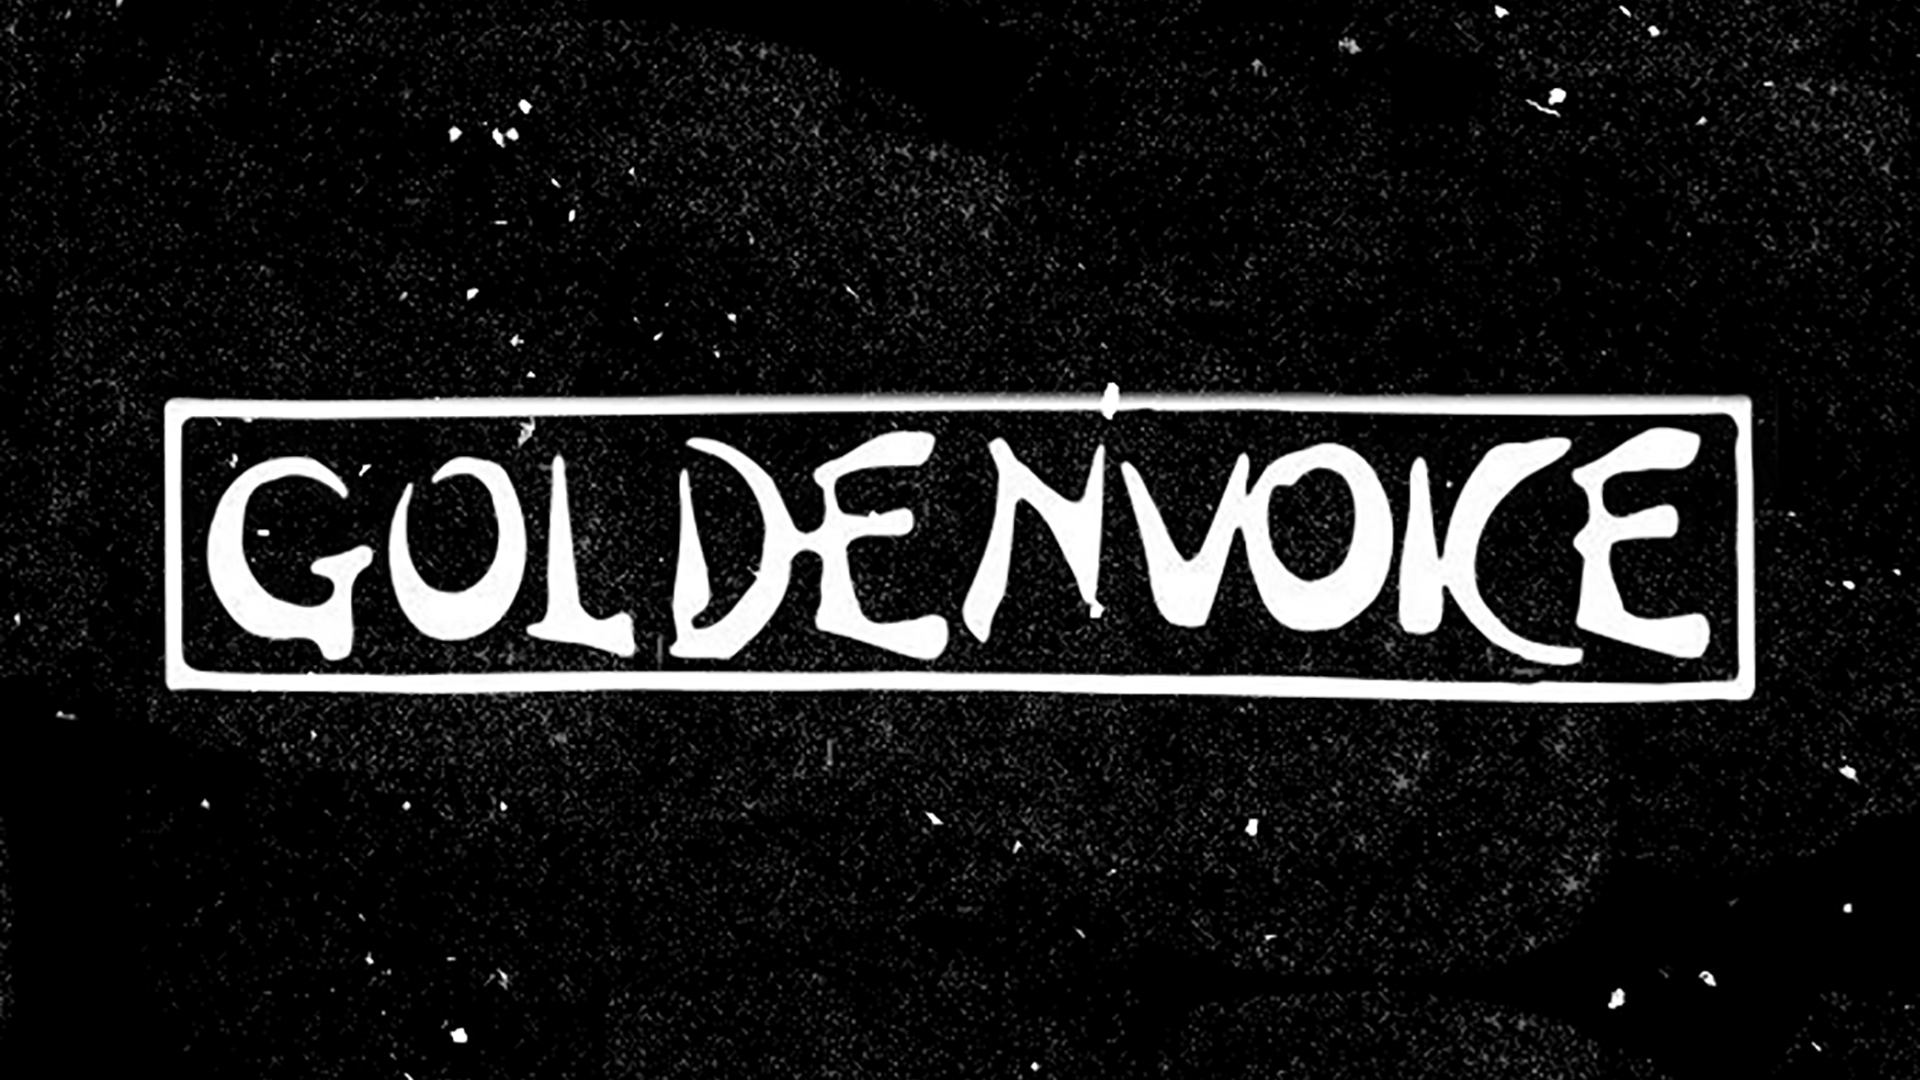 Goldenvoice.com